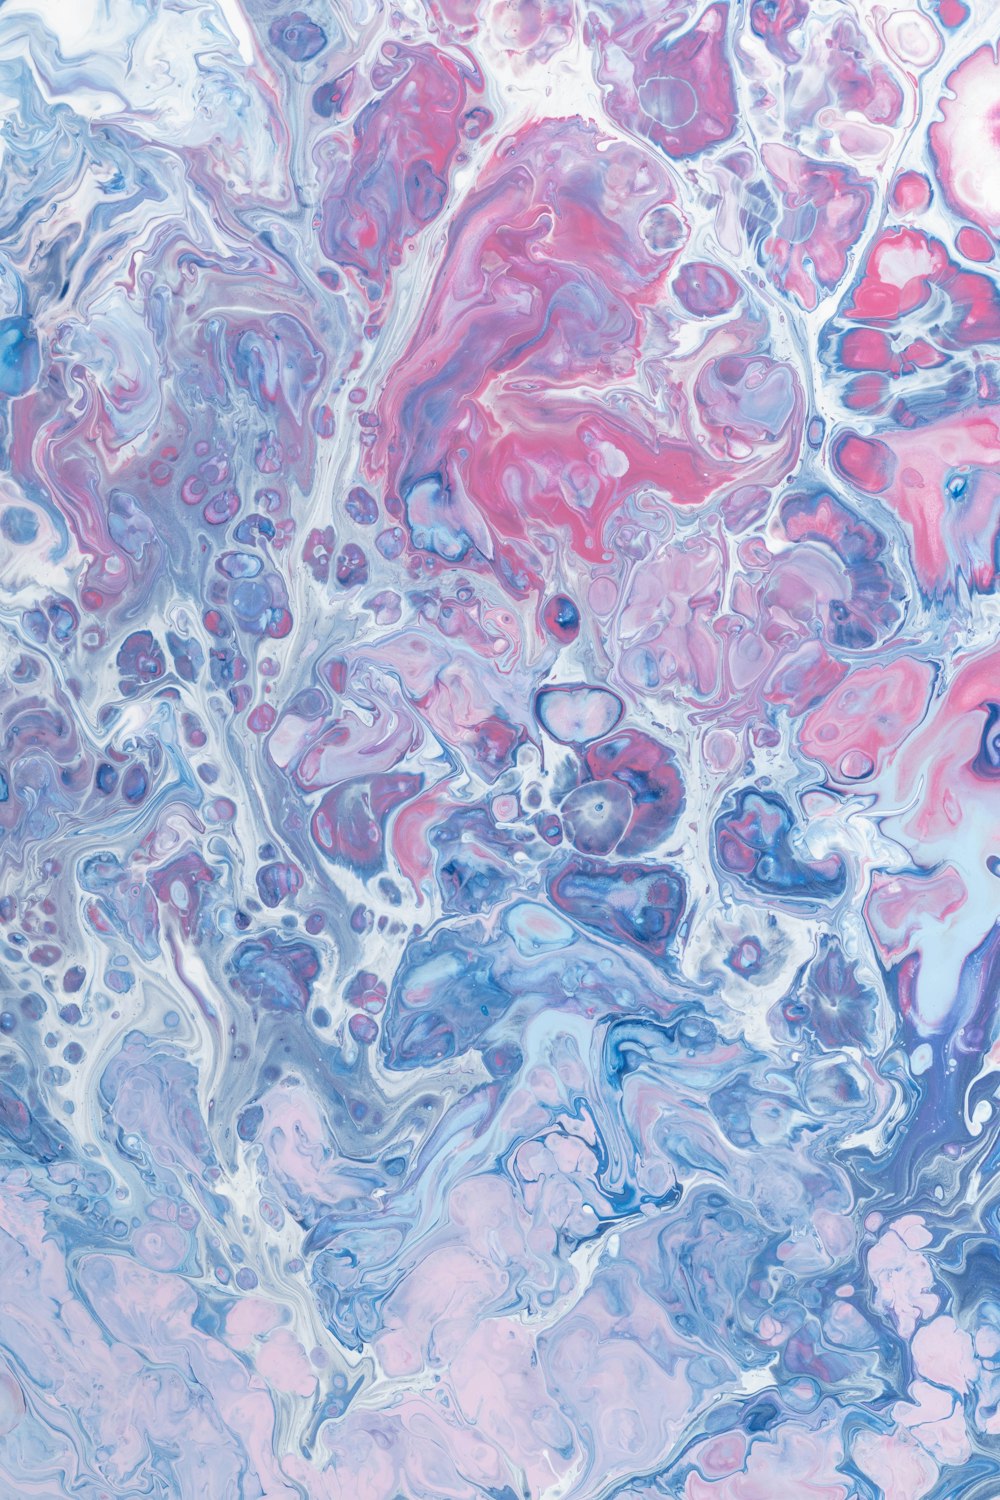 Un primo piano di un dipinto astratto con colori blu, rosa e viola